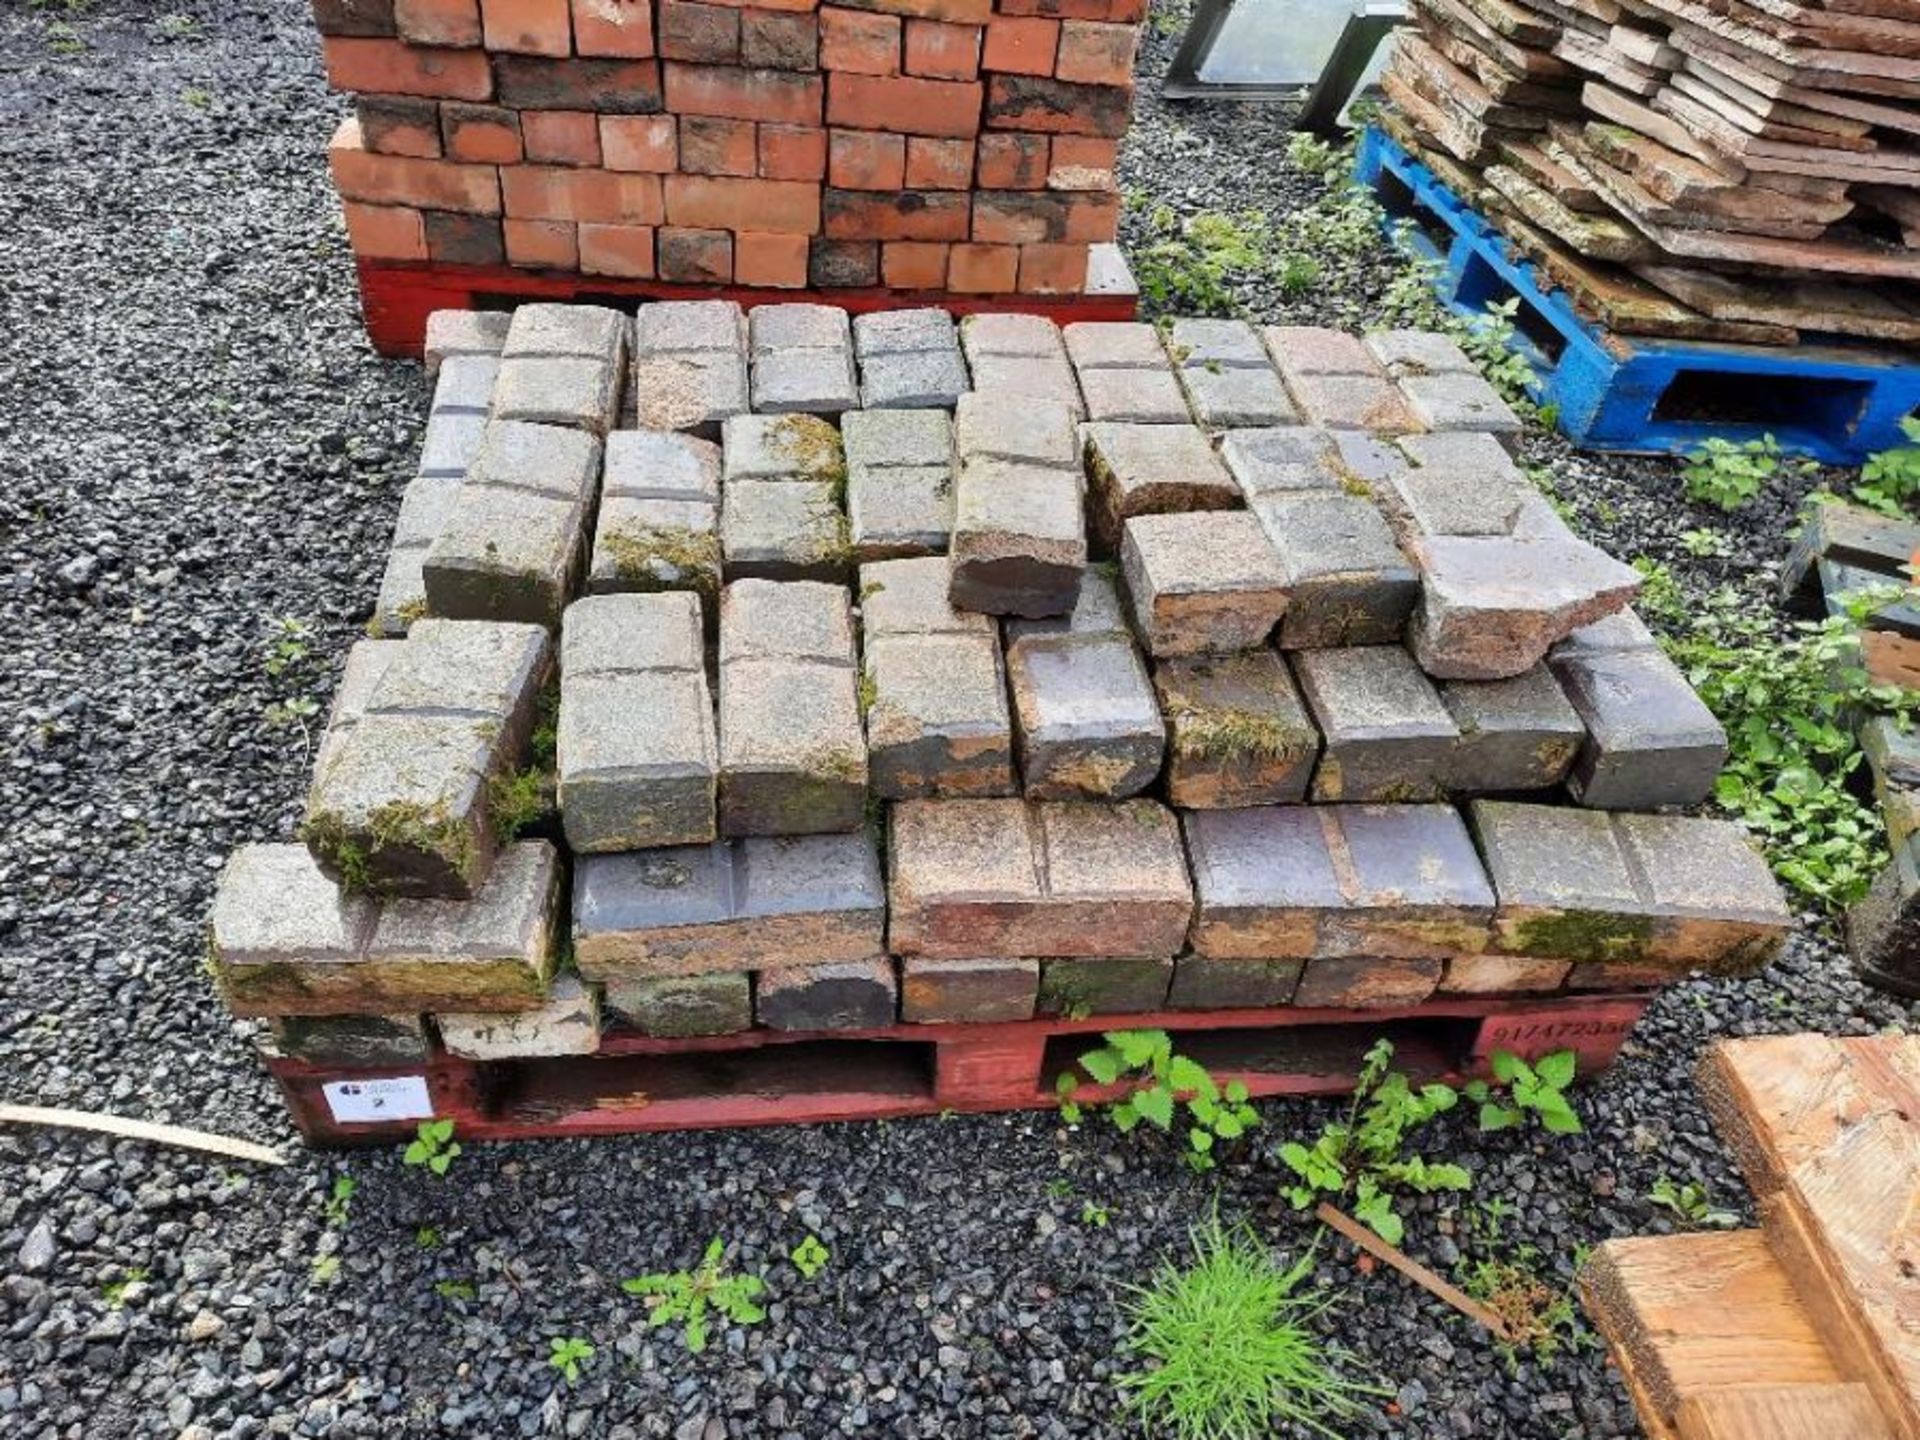 Pallet of bricks